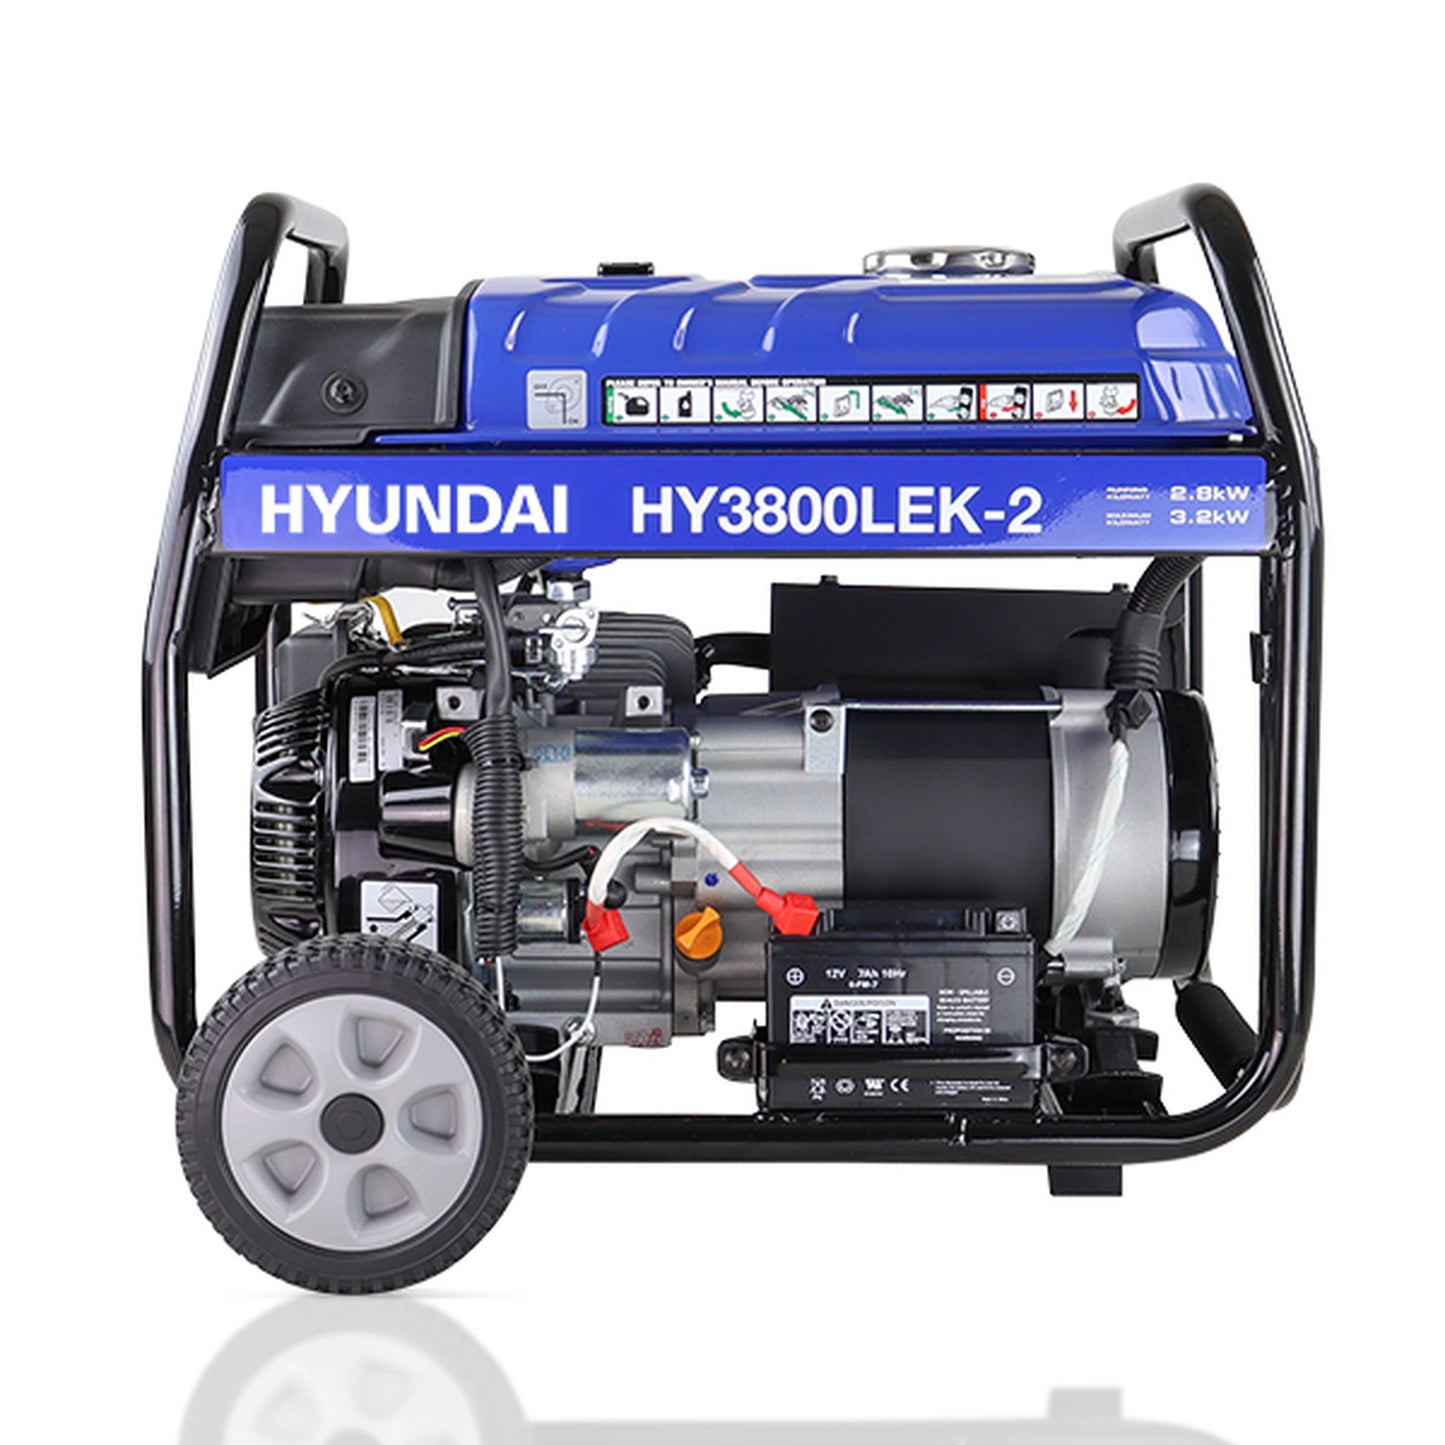 Hyundai HY3800LEK-2 3.2kW / 4kVa Site Petrol Generator